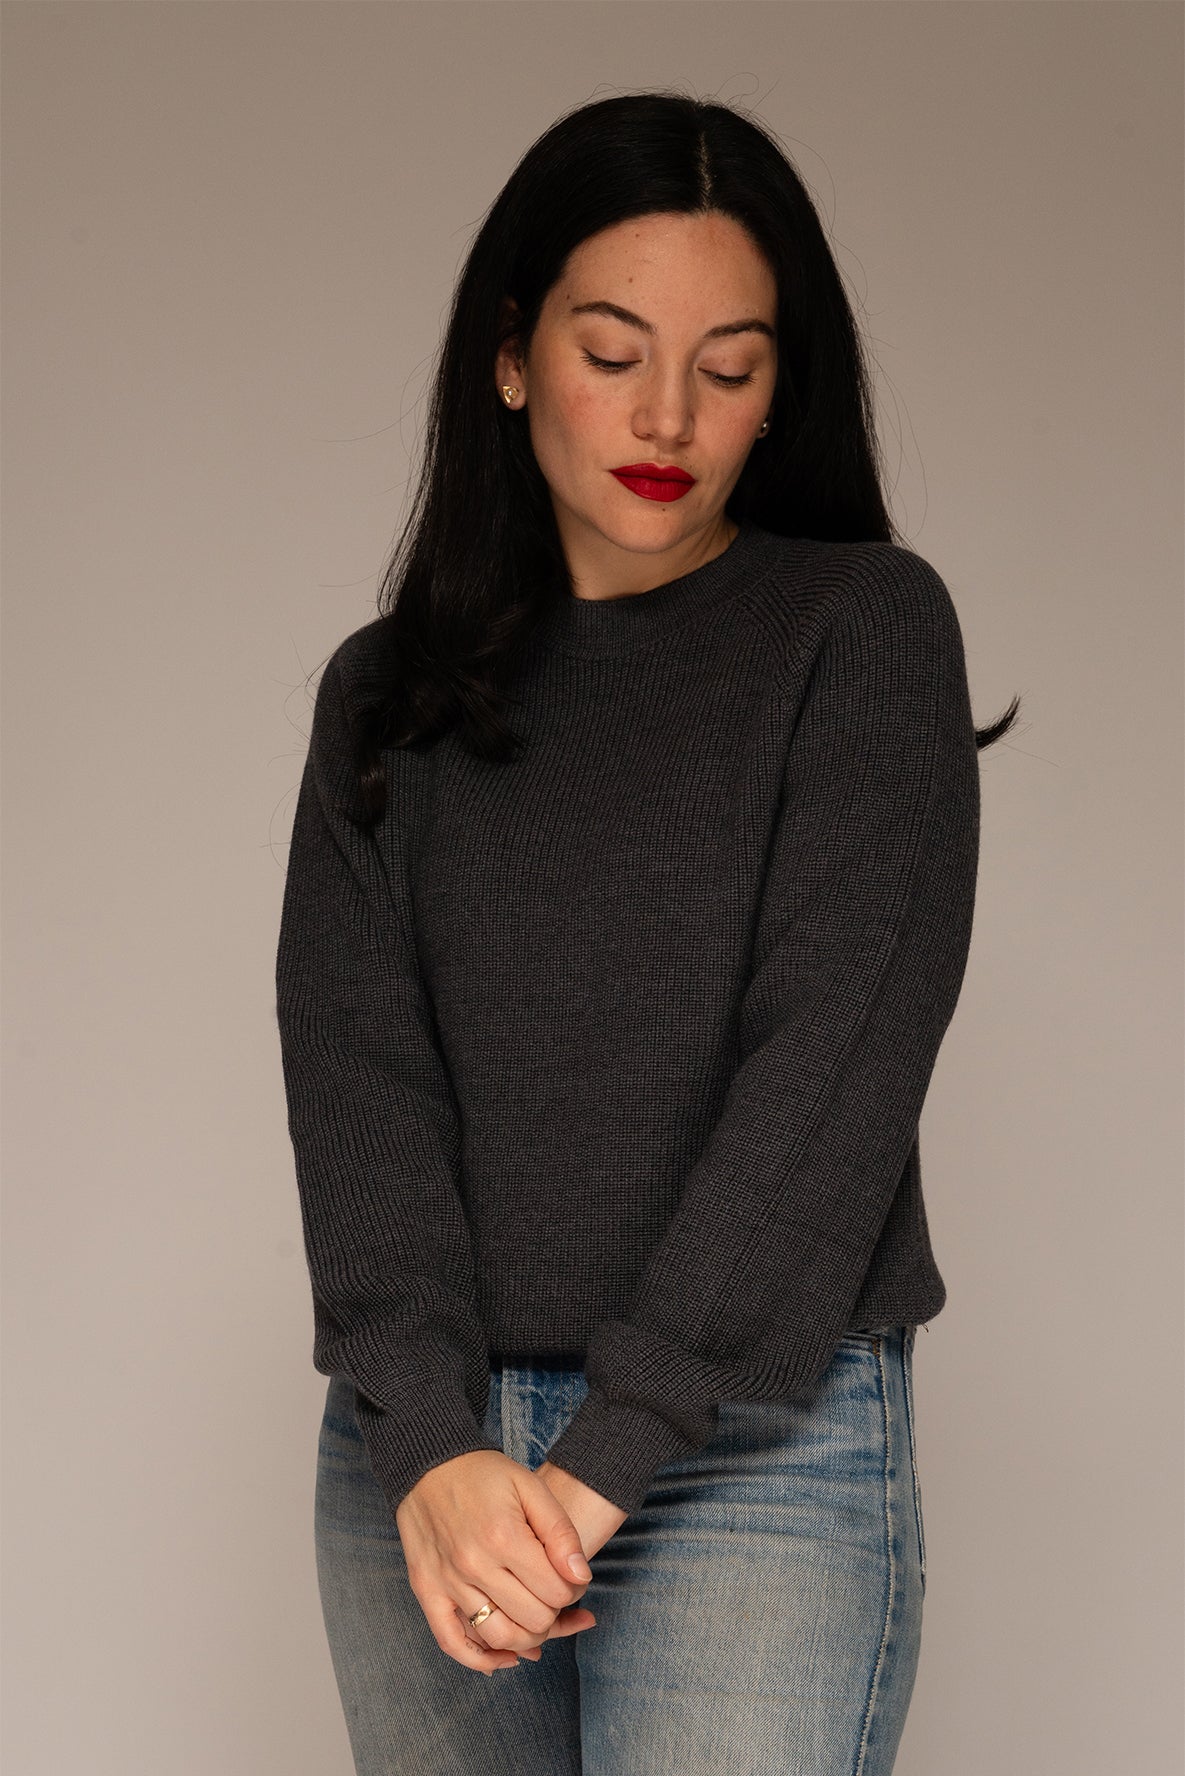 Casertano Anlgaise Stitch Sweater in Dark Heather Grey